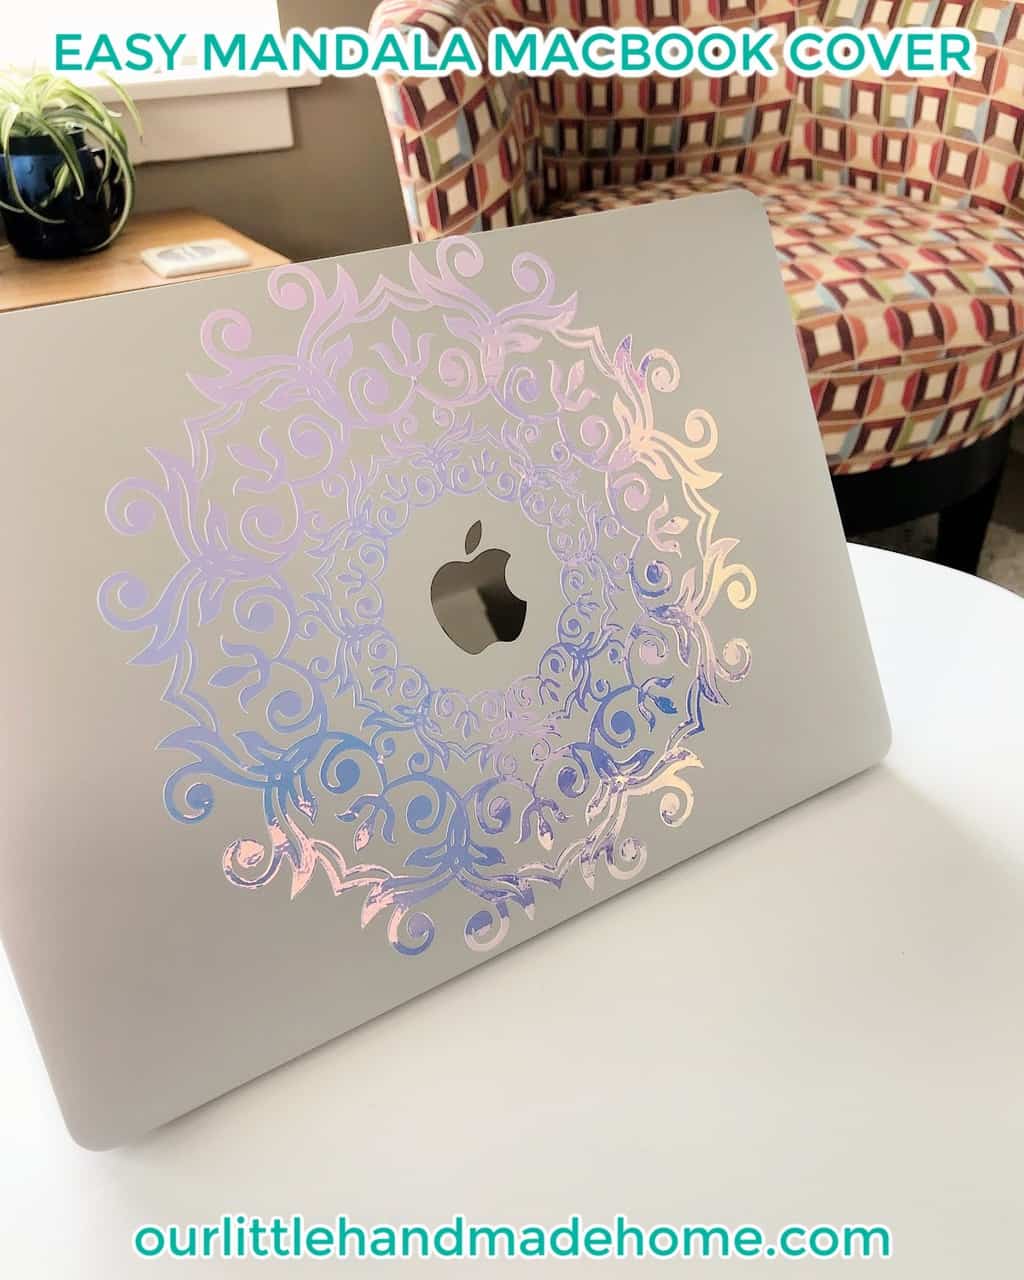 Mandala-MacBook-Cover